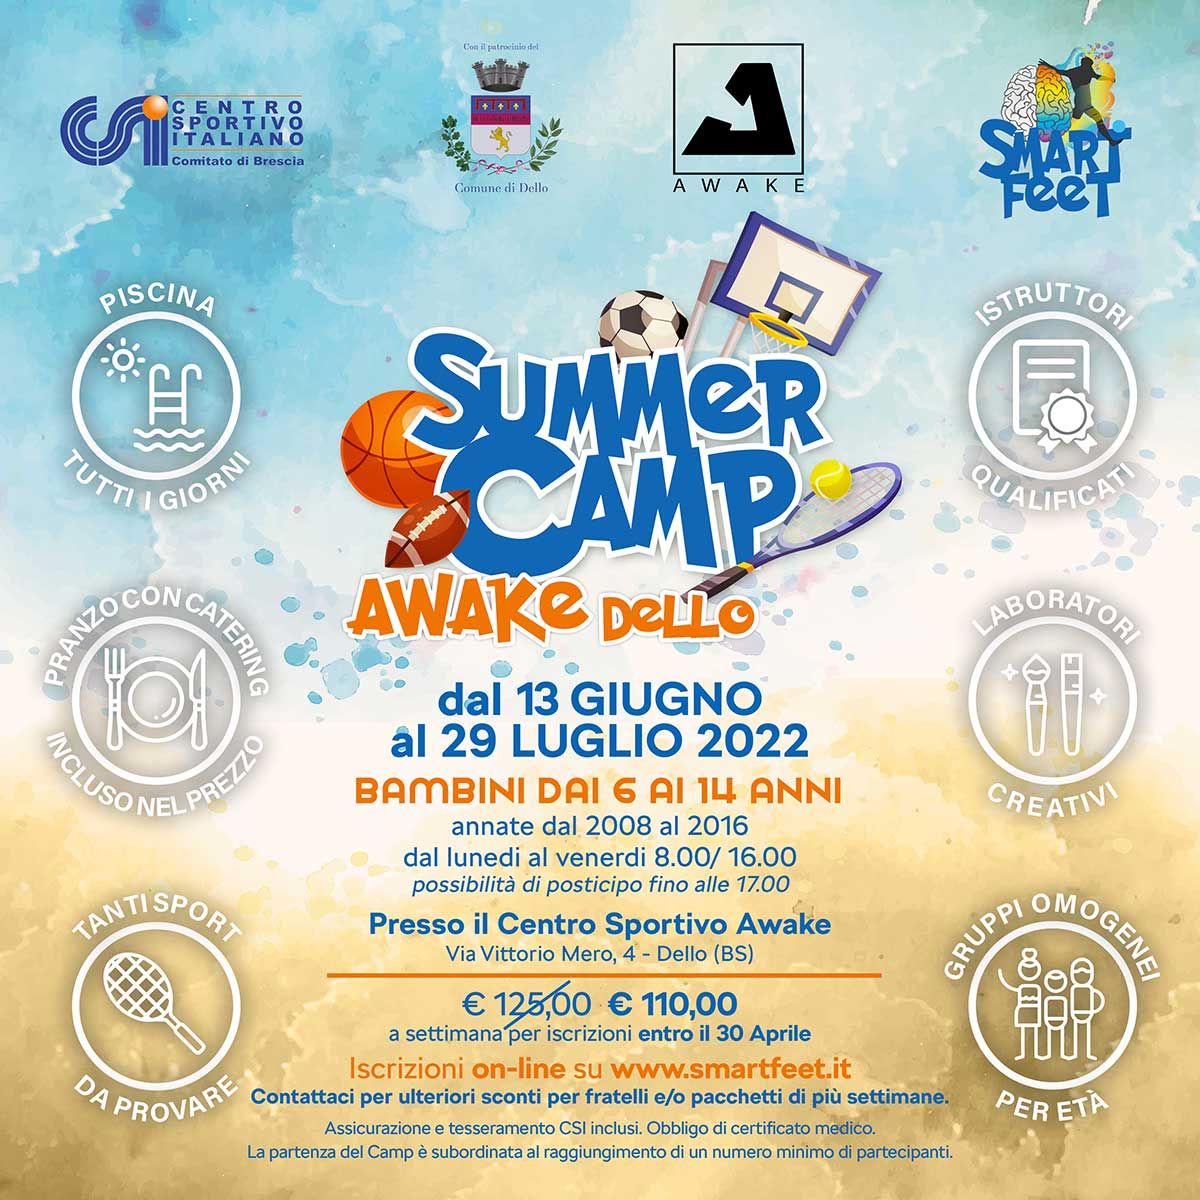 SUMMER-CAMP-Awake-Dello_2022-smartfeet